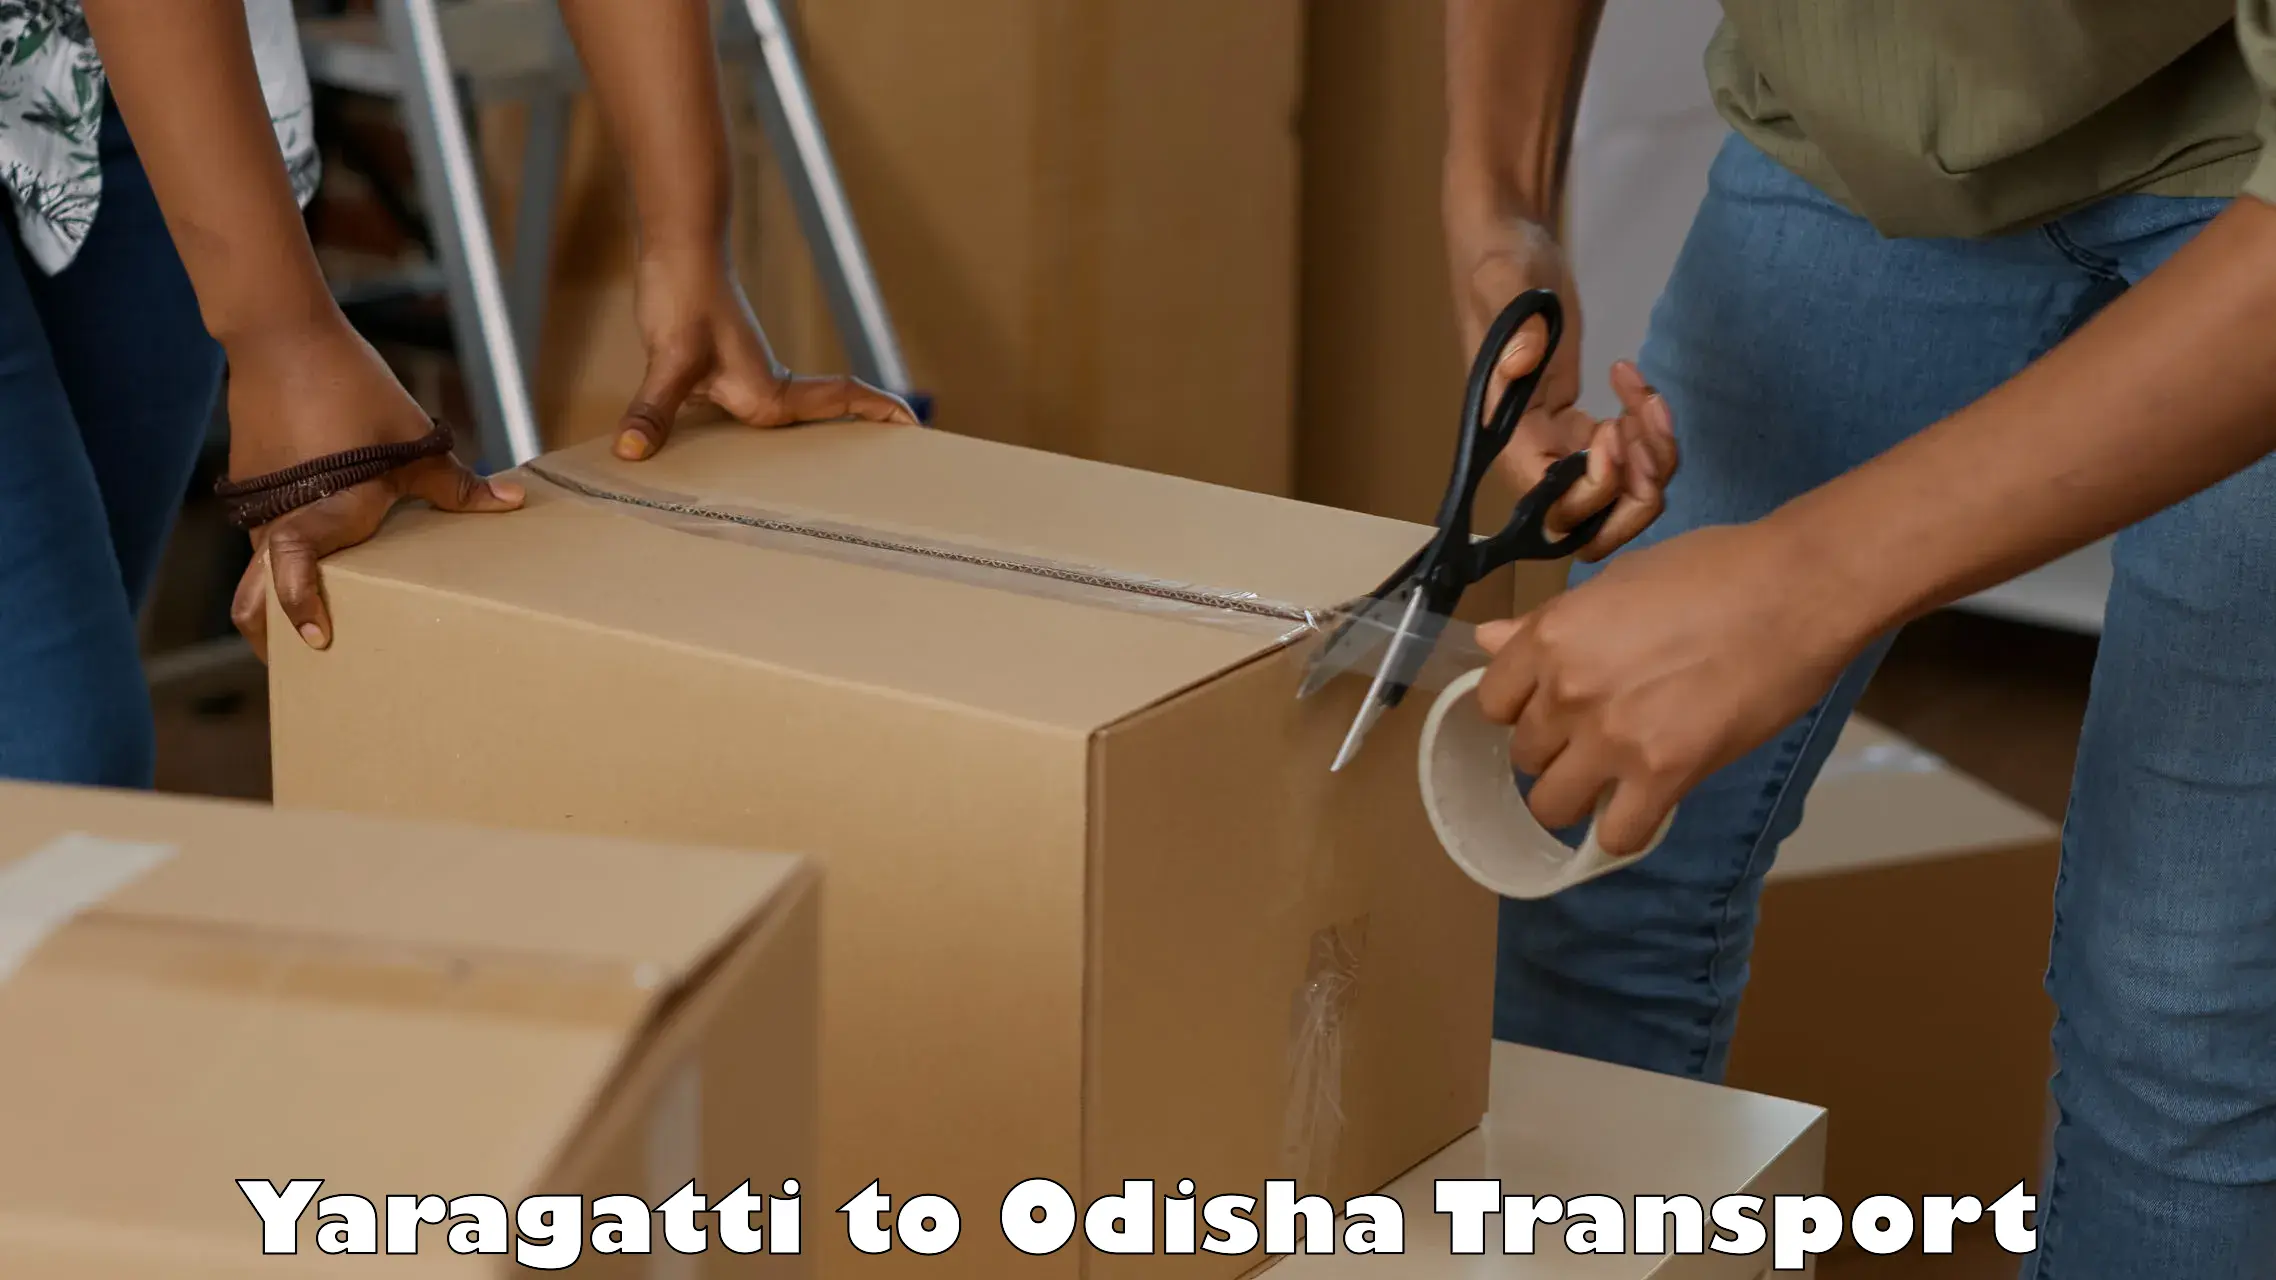 Container transport service Yaragatti to Semiliguda